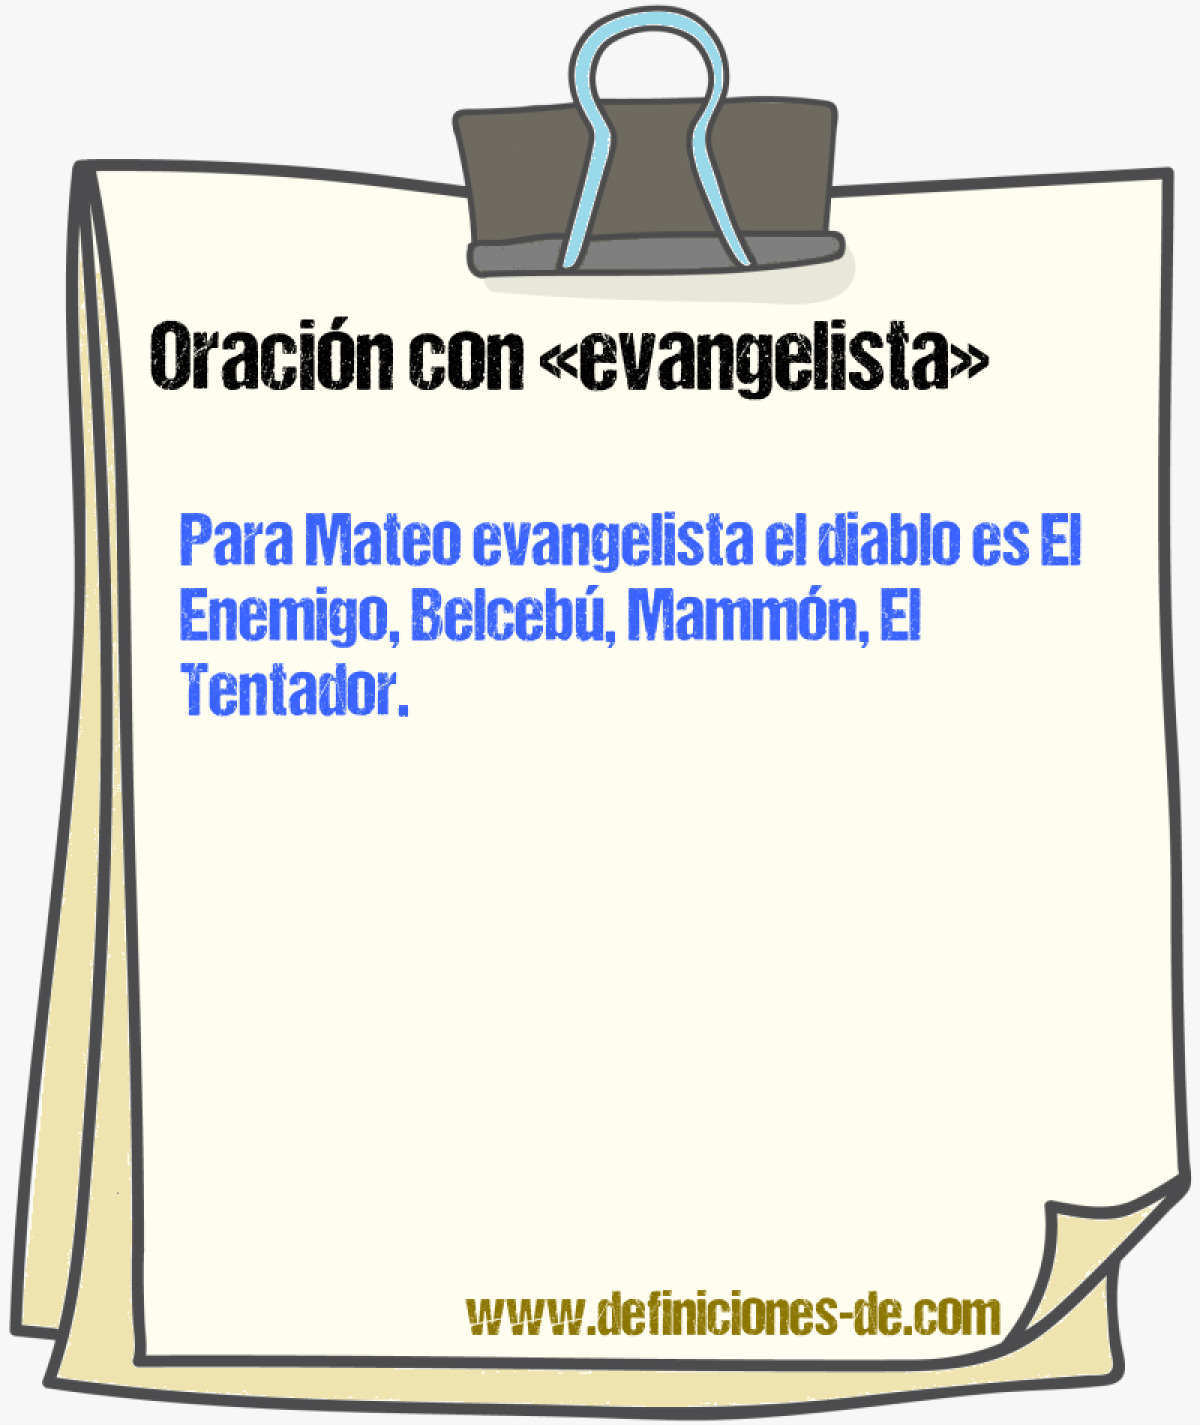 Ejemplos de oraciones con evangelista